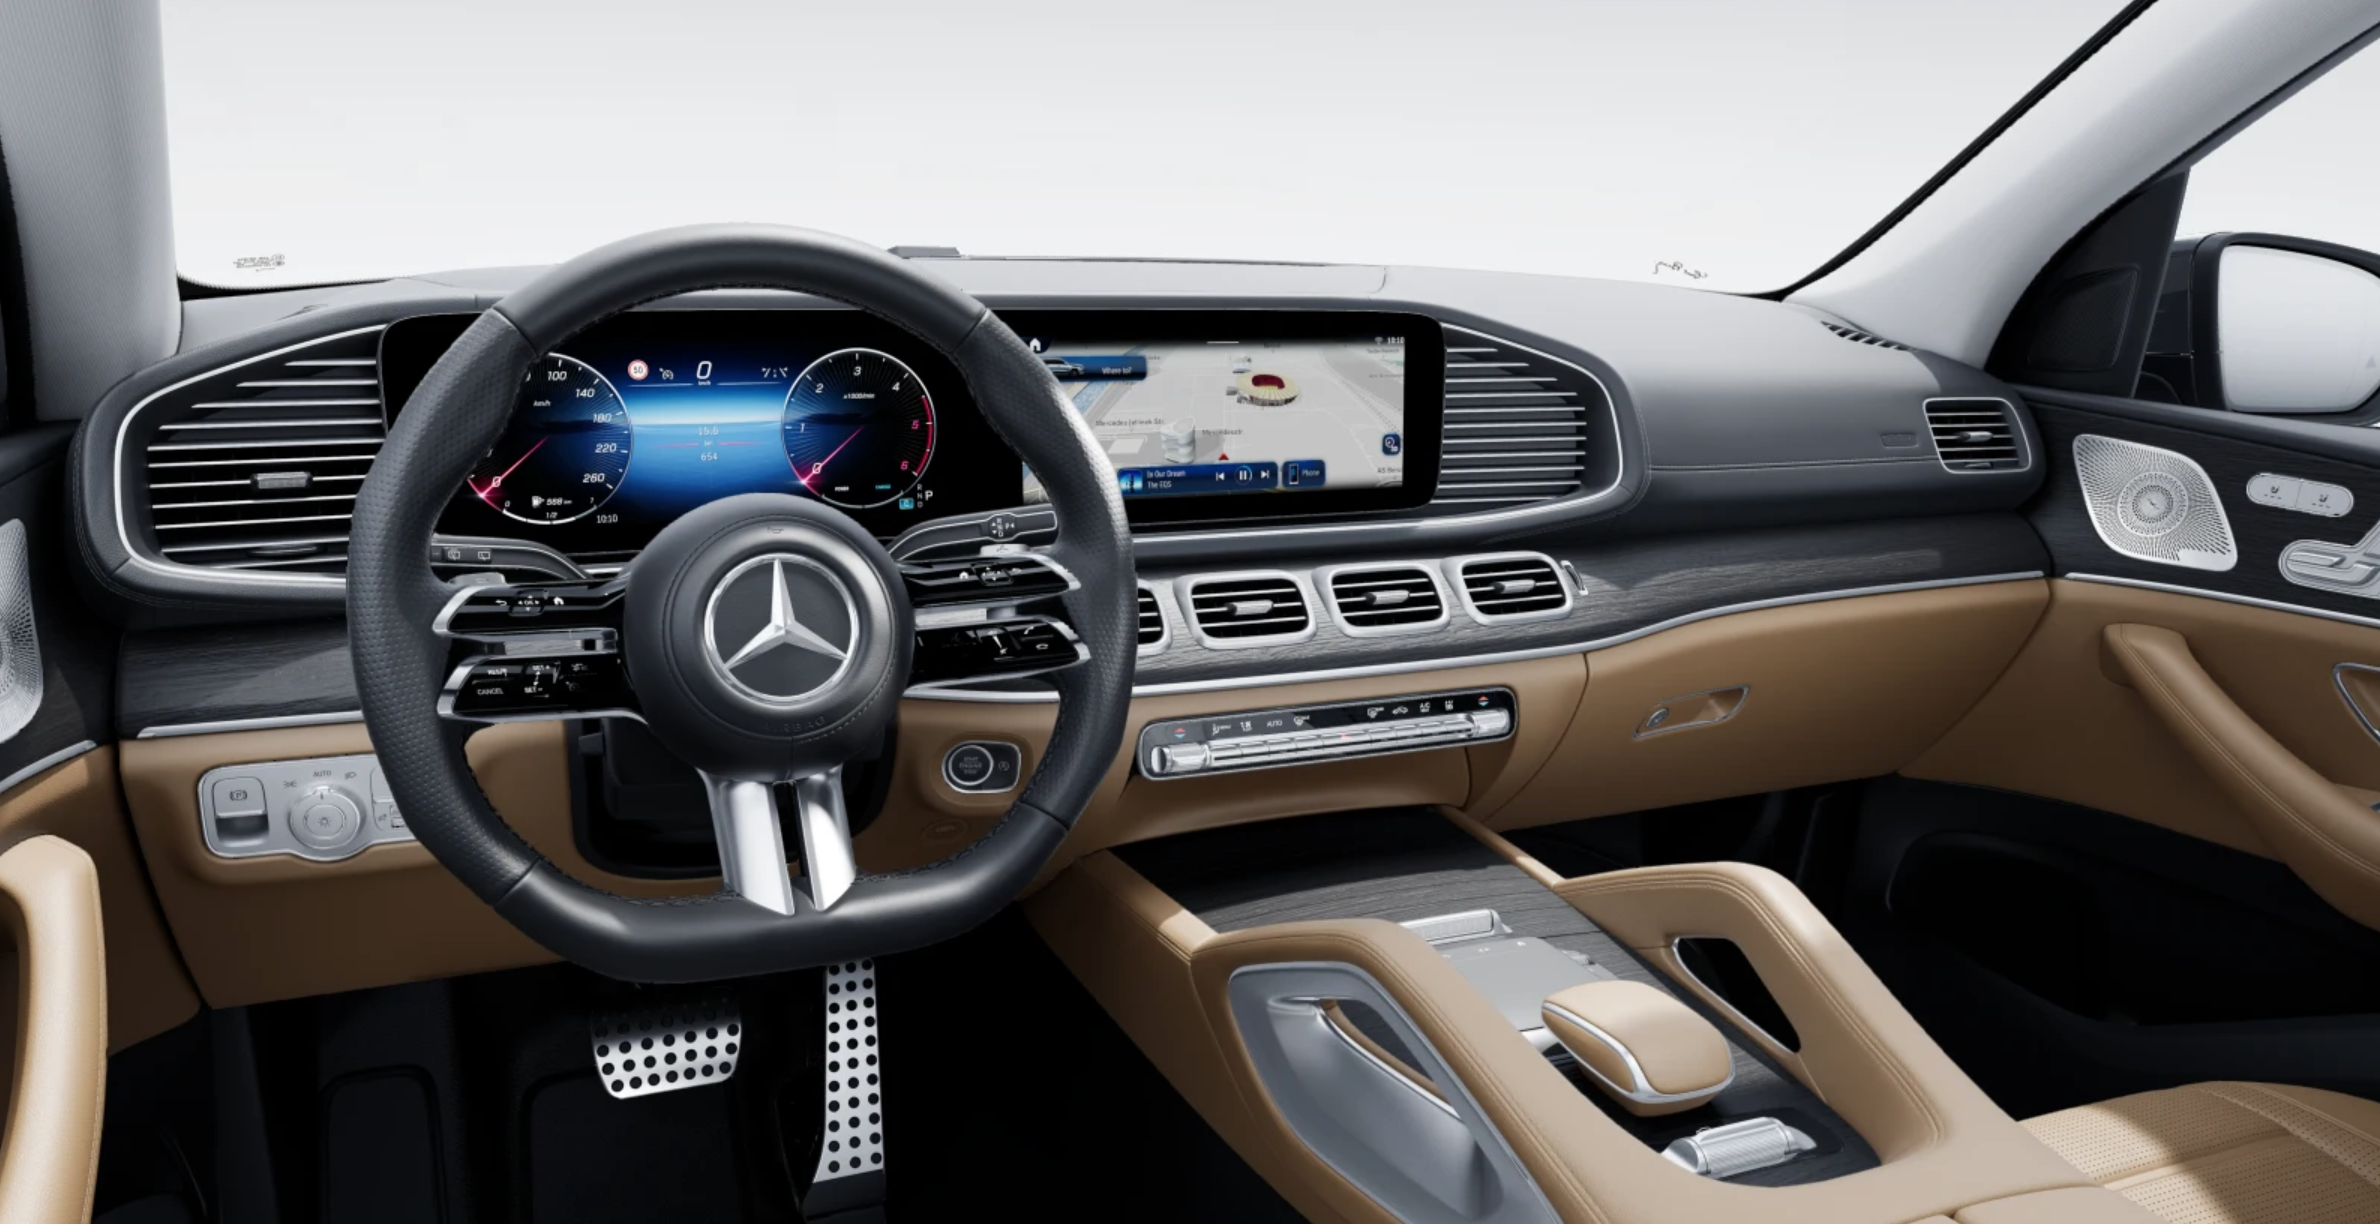 Mercedes GLS 450d 4matic AMG | nový facelift | první nové auta skladem | nejmodernější velké naftové SUV | luxusní béžový interiér | nové české auto skladem  | nafta 387 koní | perfektní výbava | super cena 2.999.000,- Kč s DPH | ihned k předání | nákup online na AUTOiBUY.com